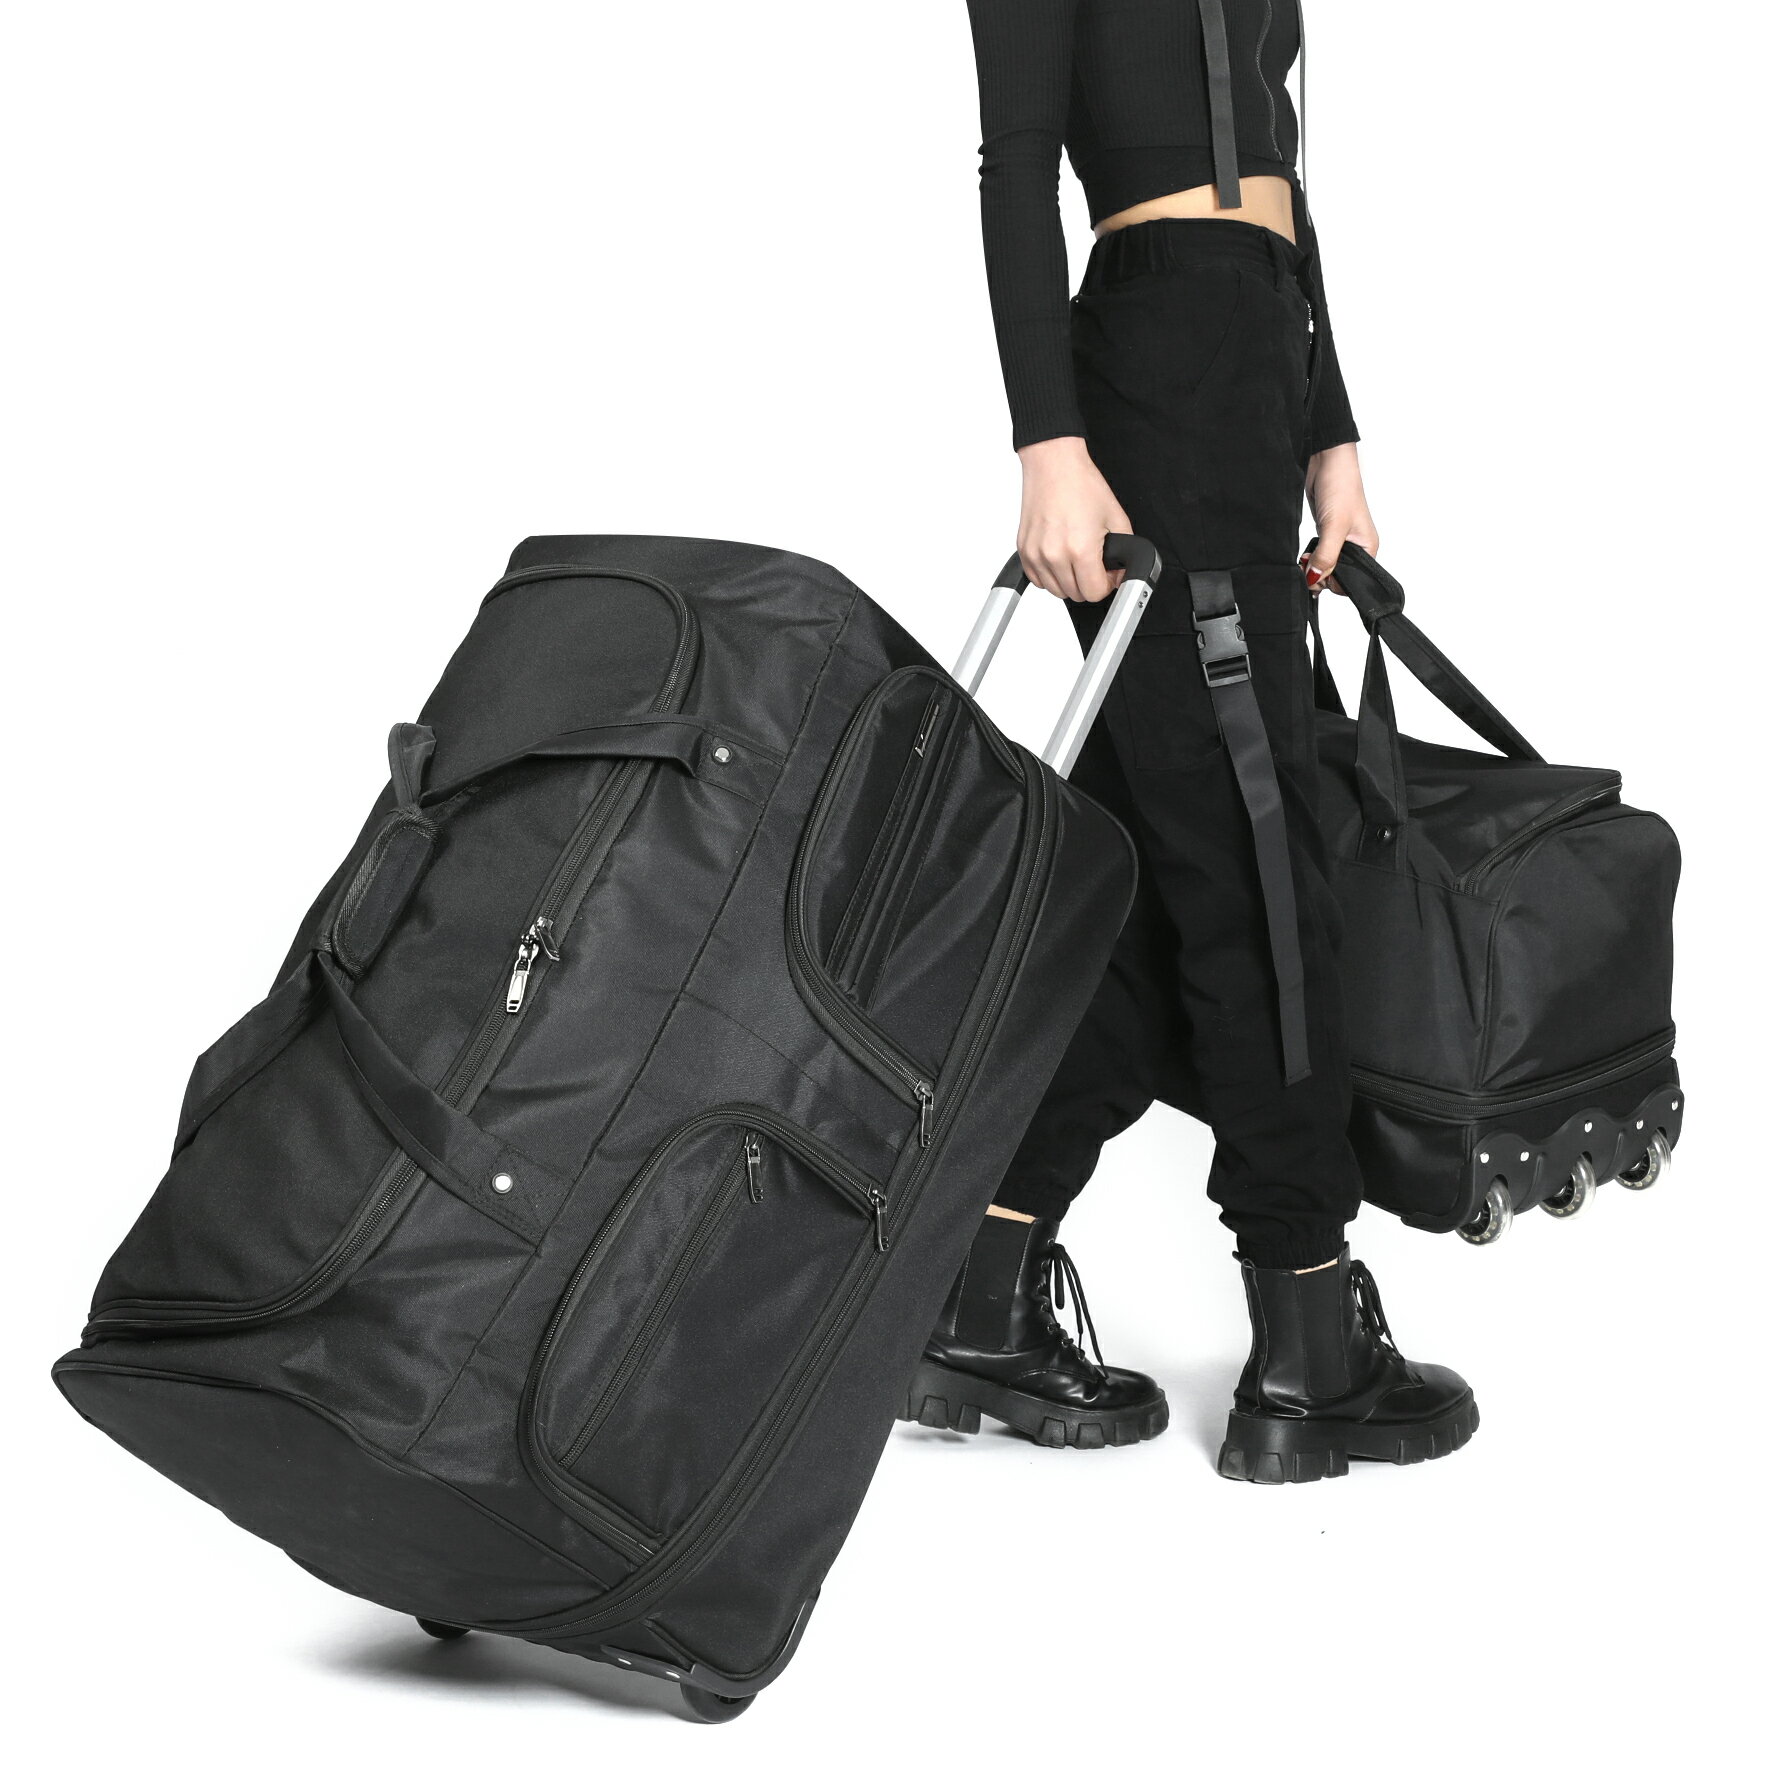 拉桿包旅行袋男大容量可擴展折疊牛津布防水手提短途女學生行李袋 夏洛特居家名品